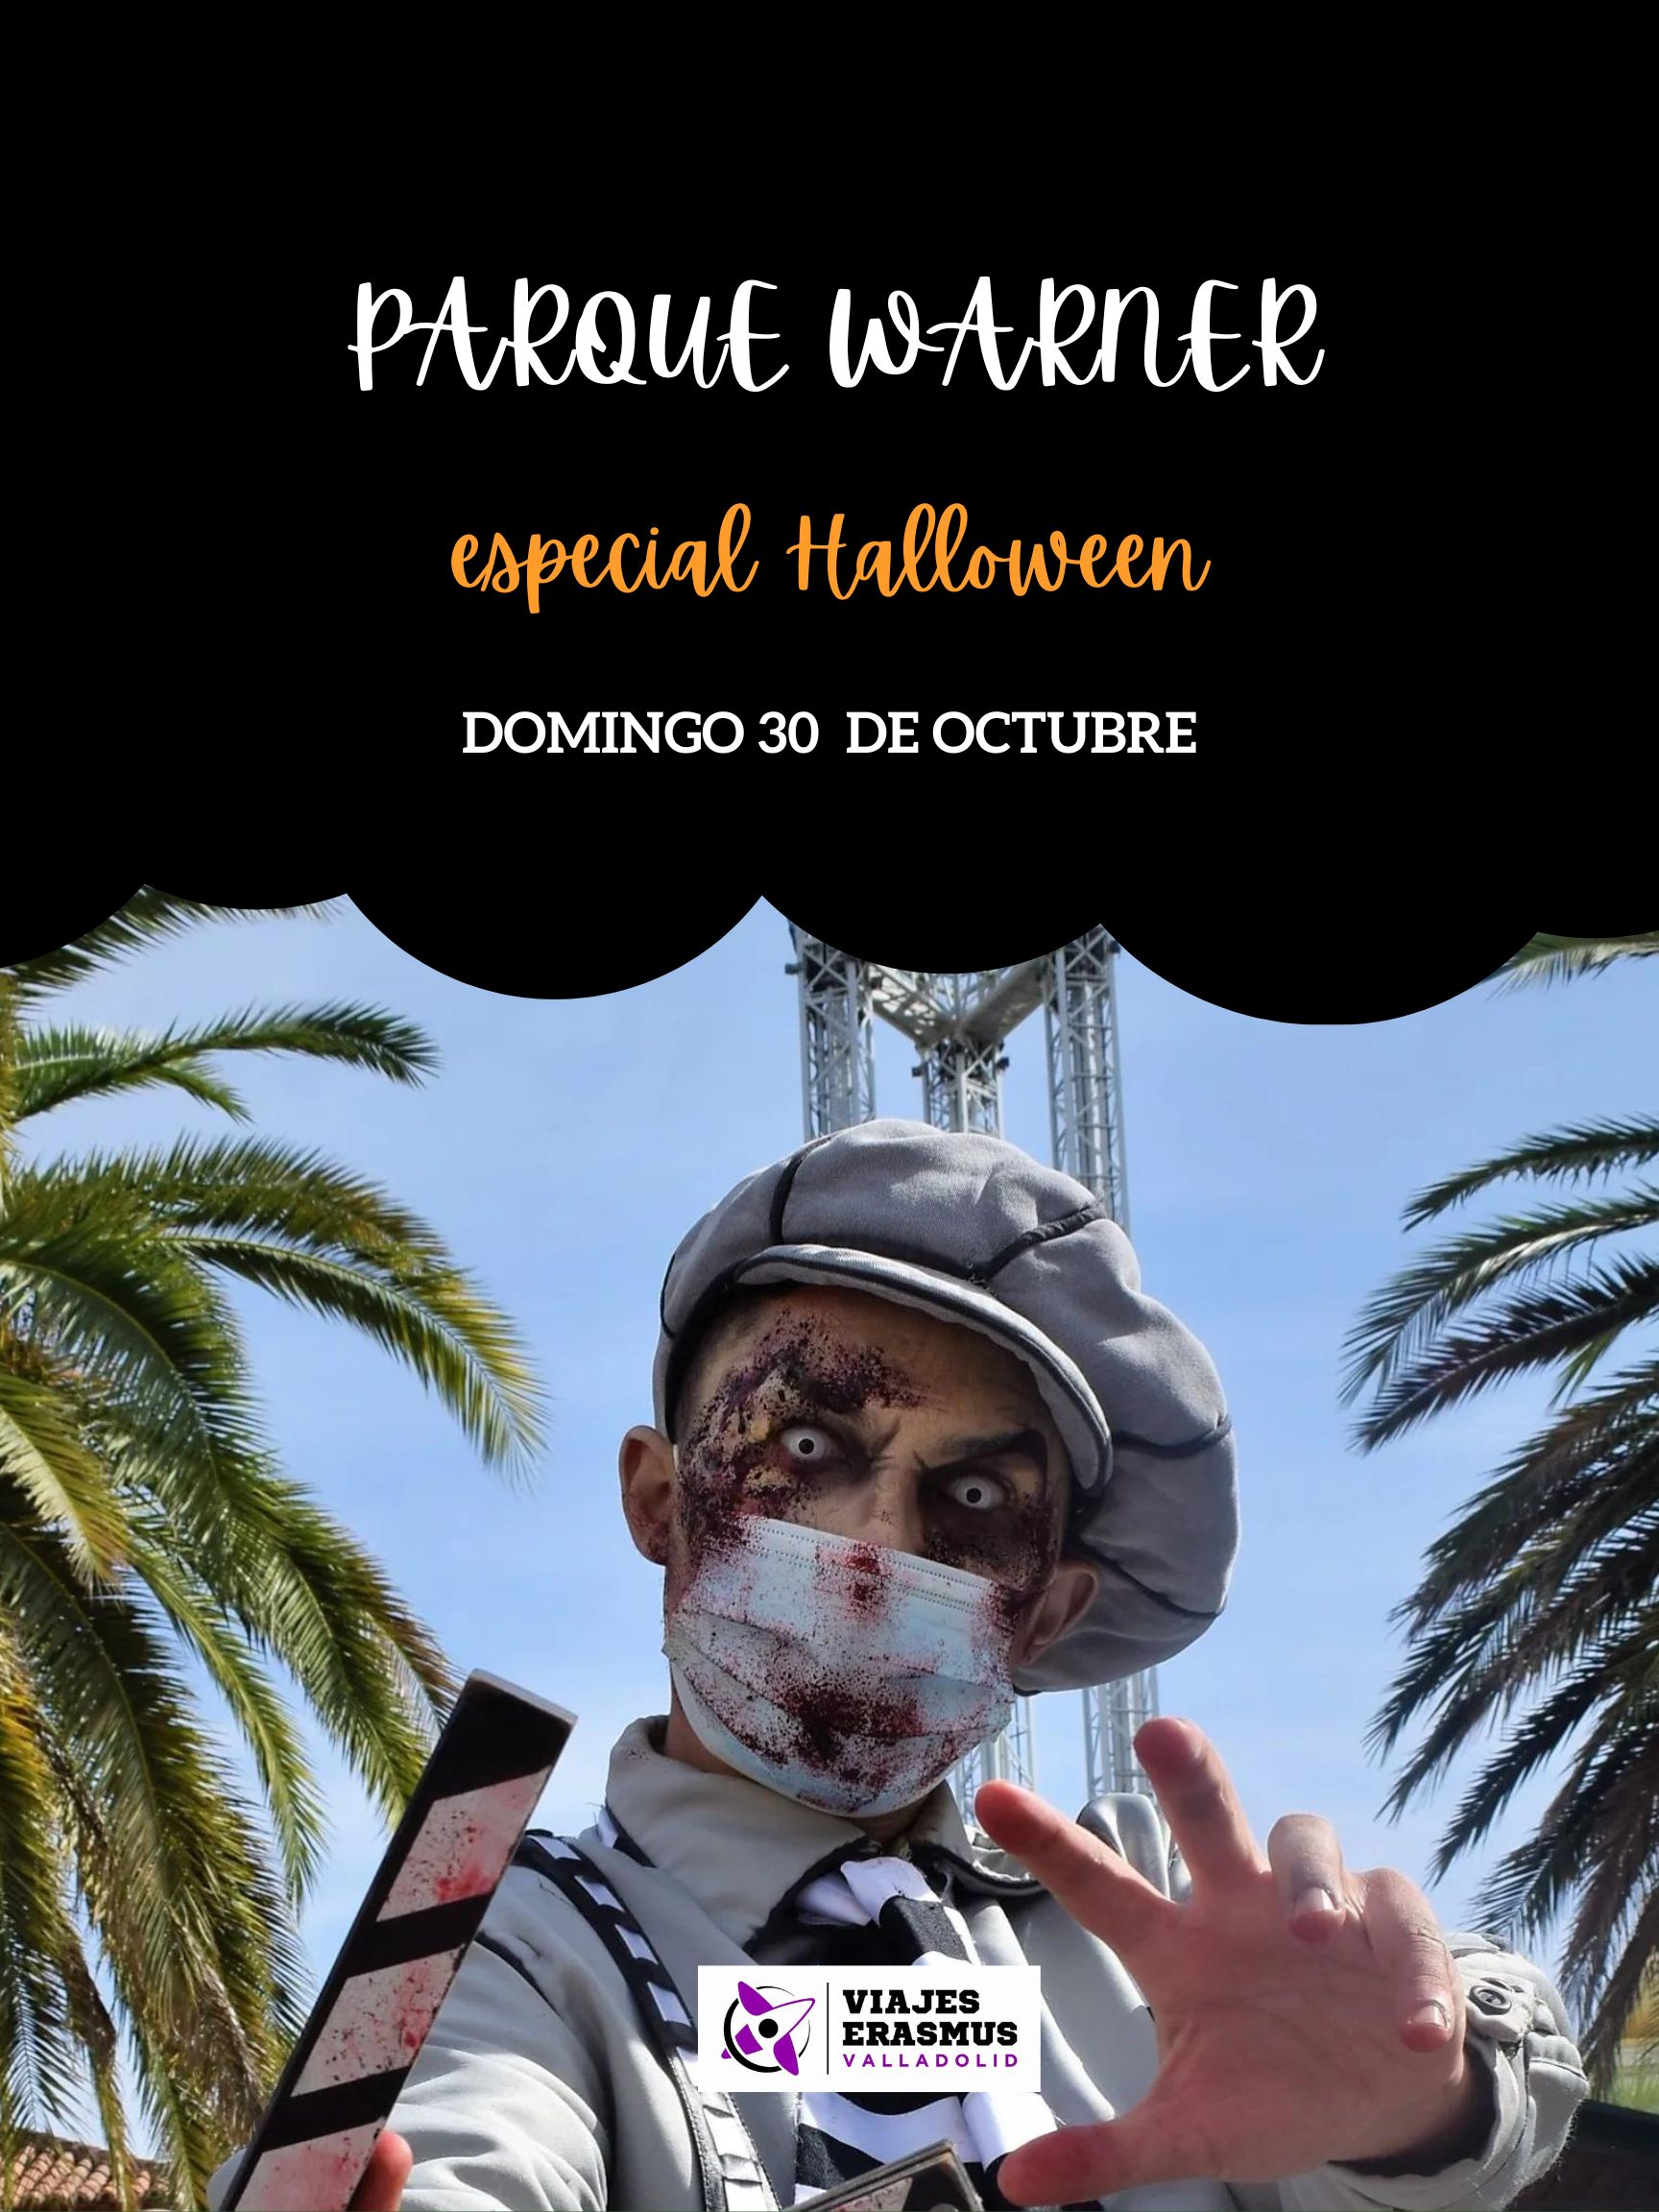 Viaje al parque Warner 30 Octubre ( especial Halloween )